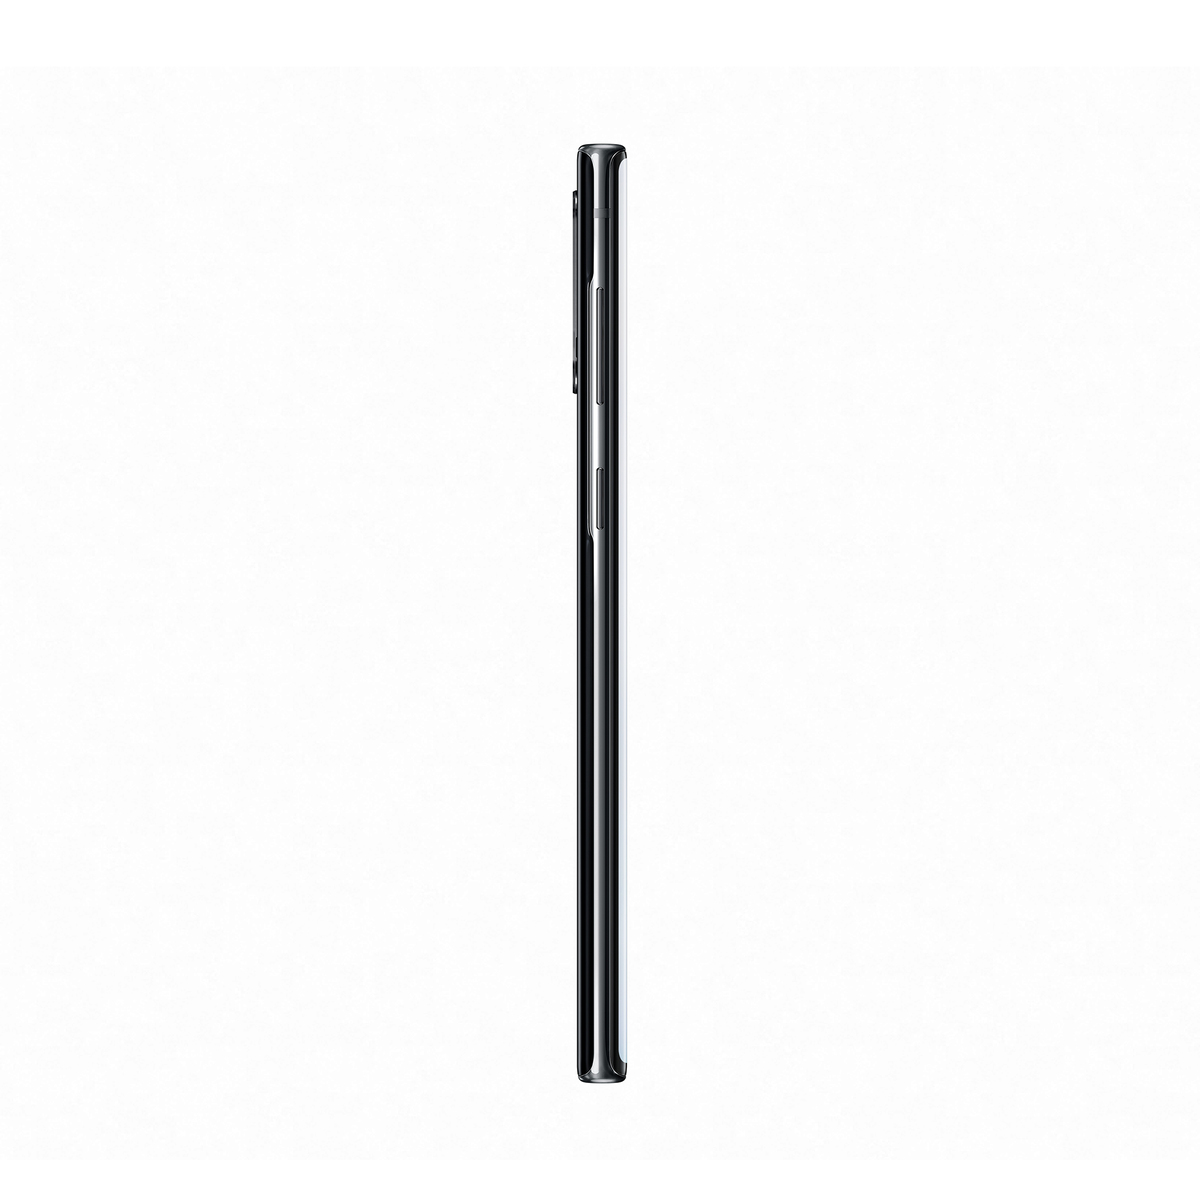 Samsung Galaxy Note10 SMN970F 256GB Aura Black